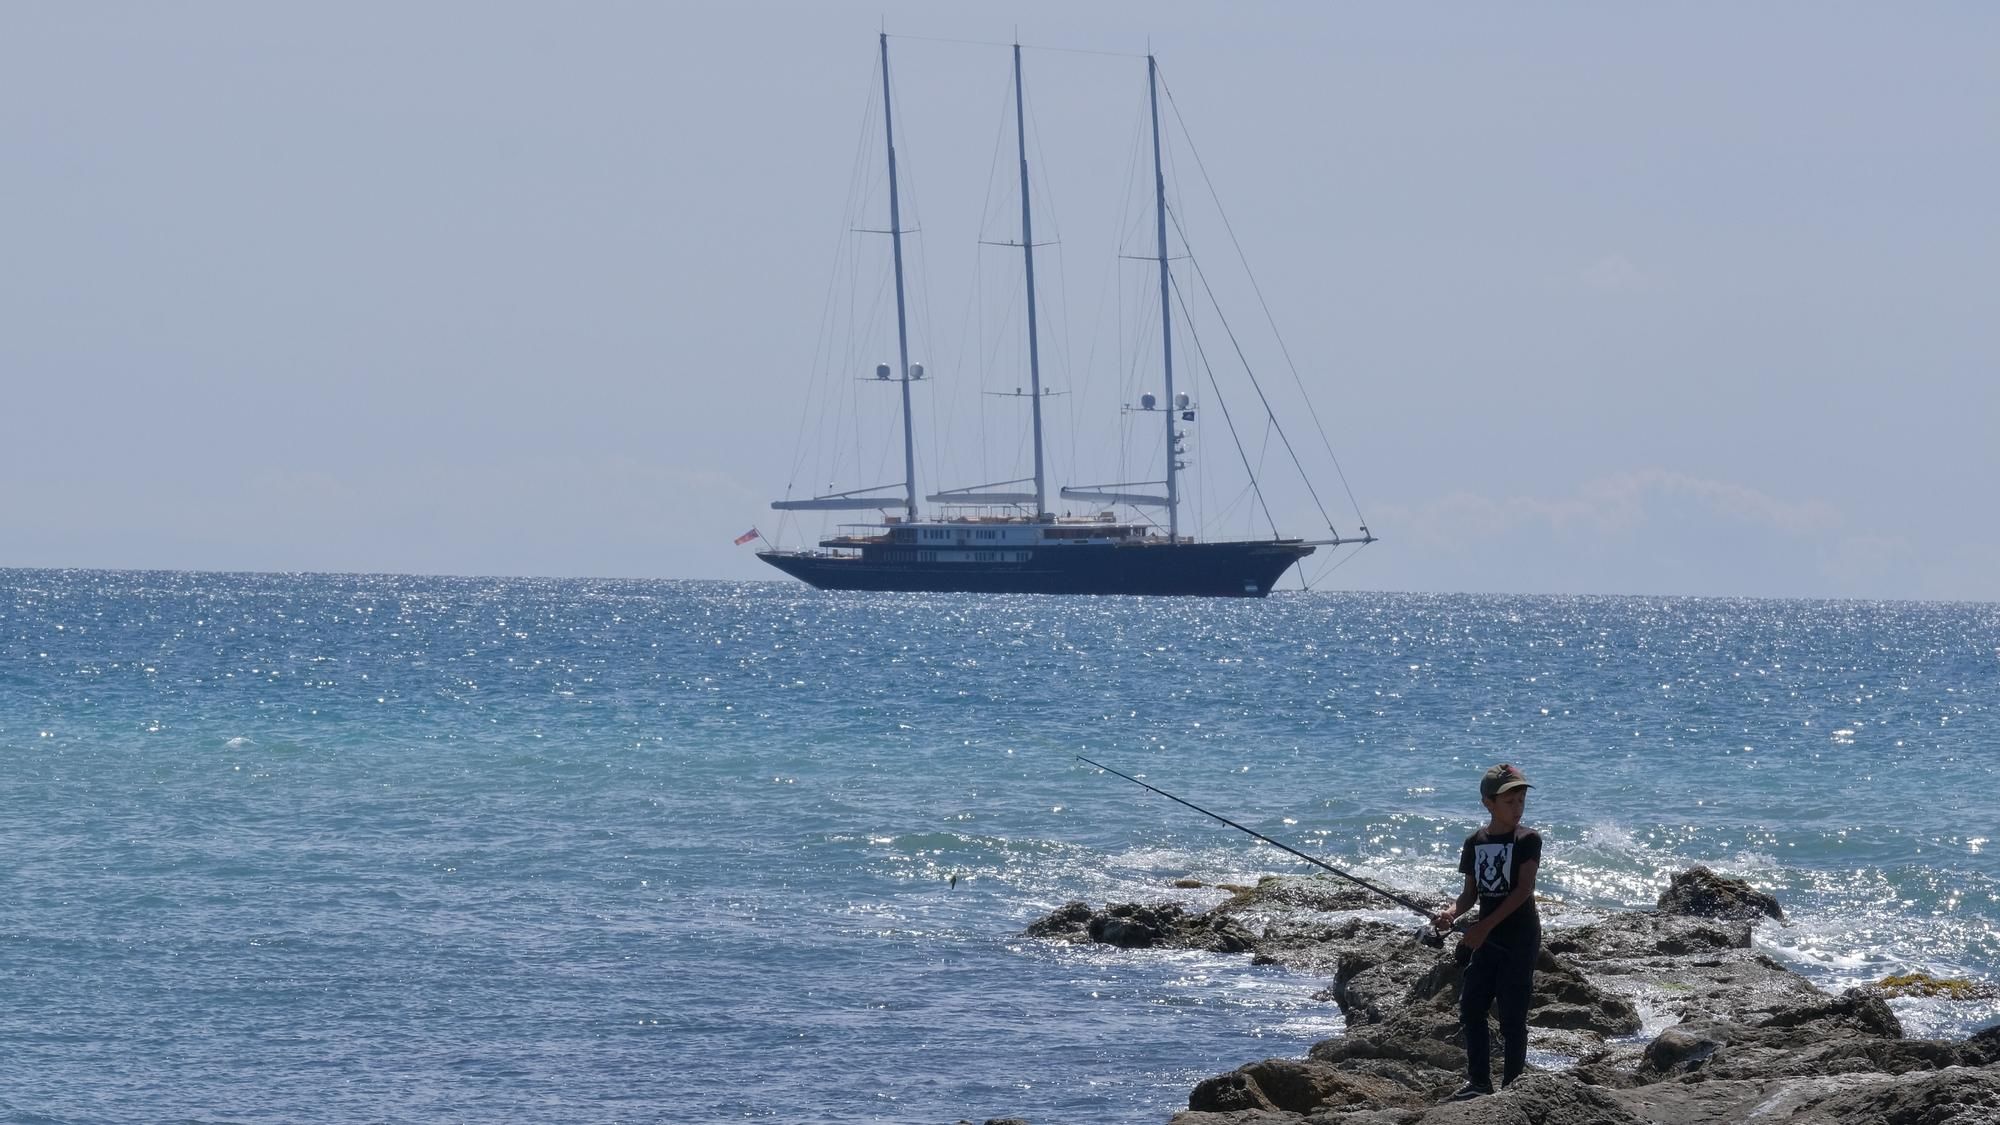 Die Gigayacht "Koru" von Jeff Bezos liegt in der Bucht von Palma de Mallorca